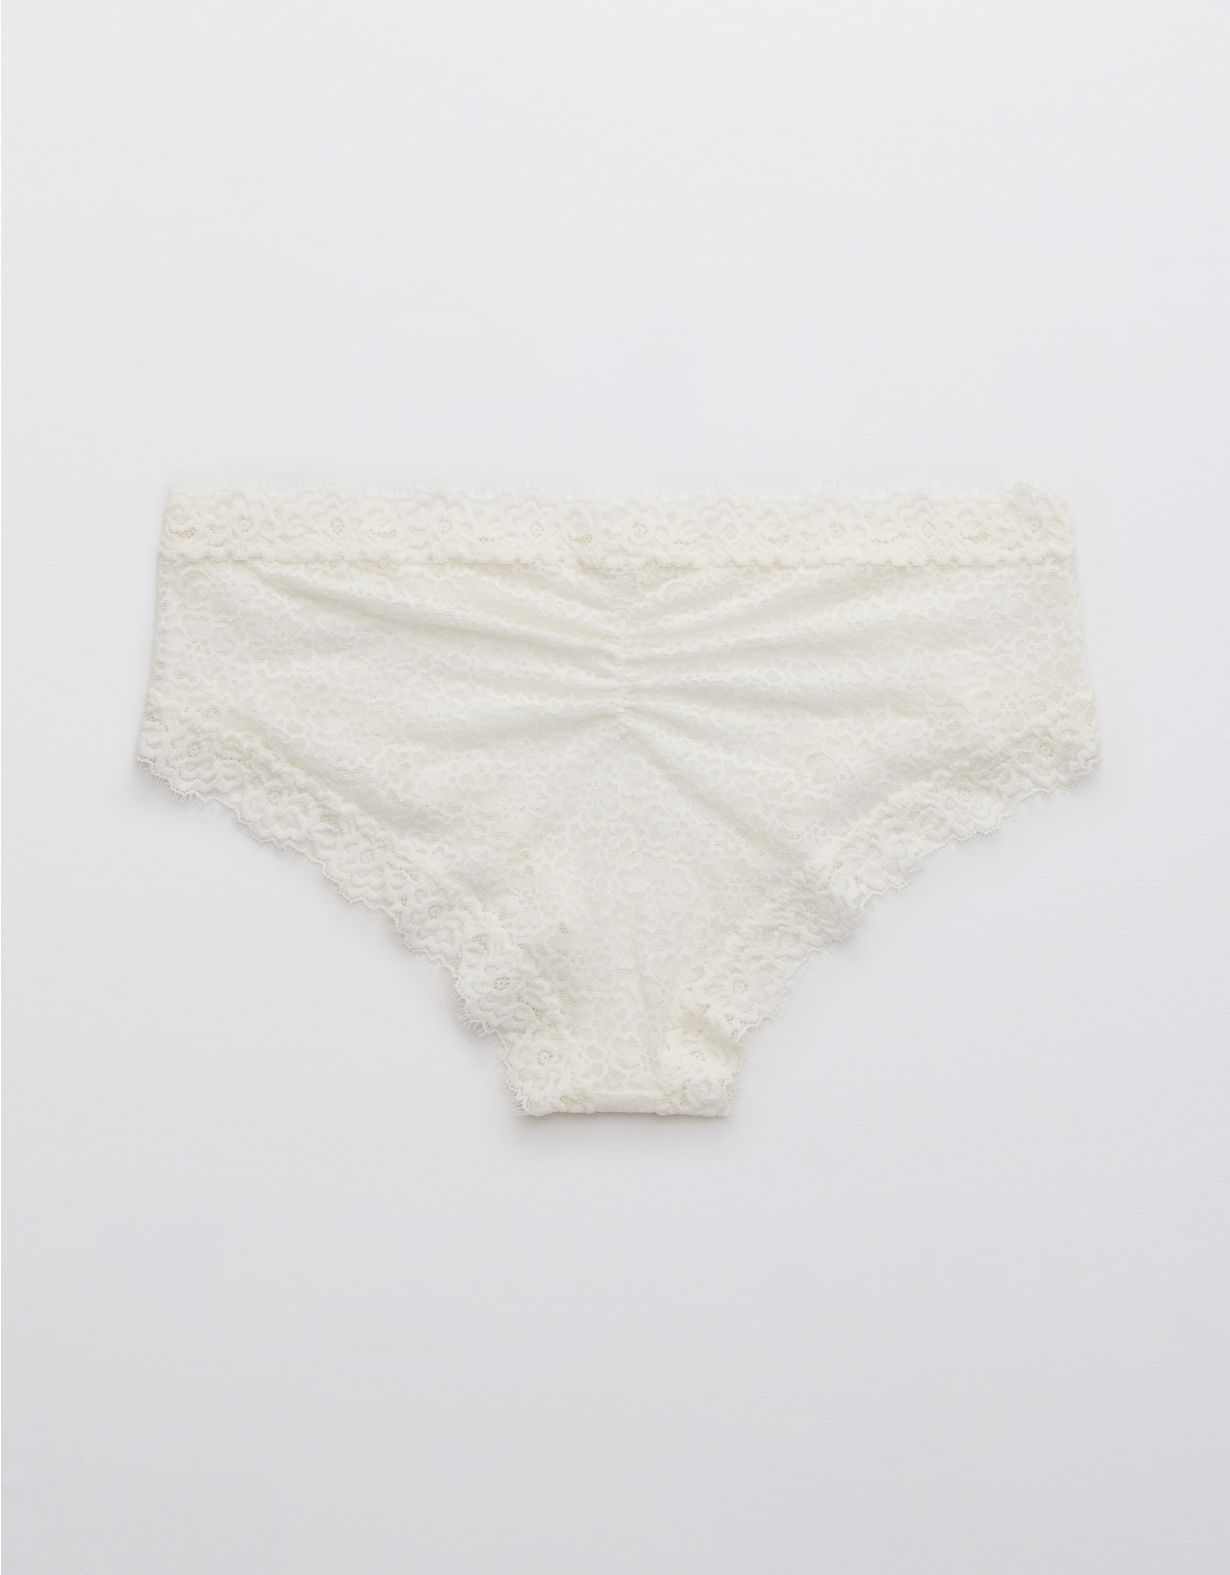 Aerie Eyelash Lace Cheeky Underwear